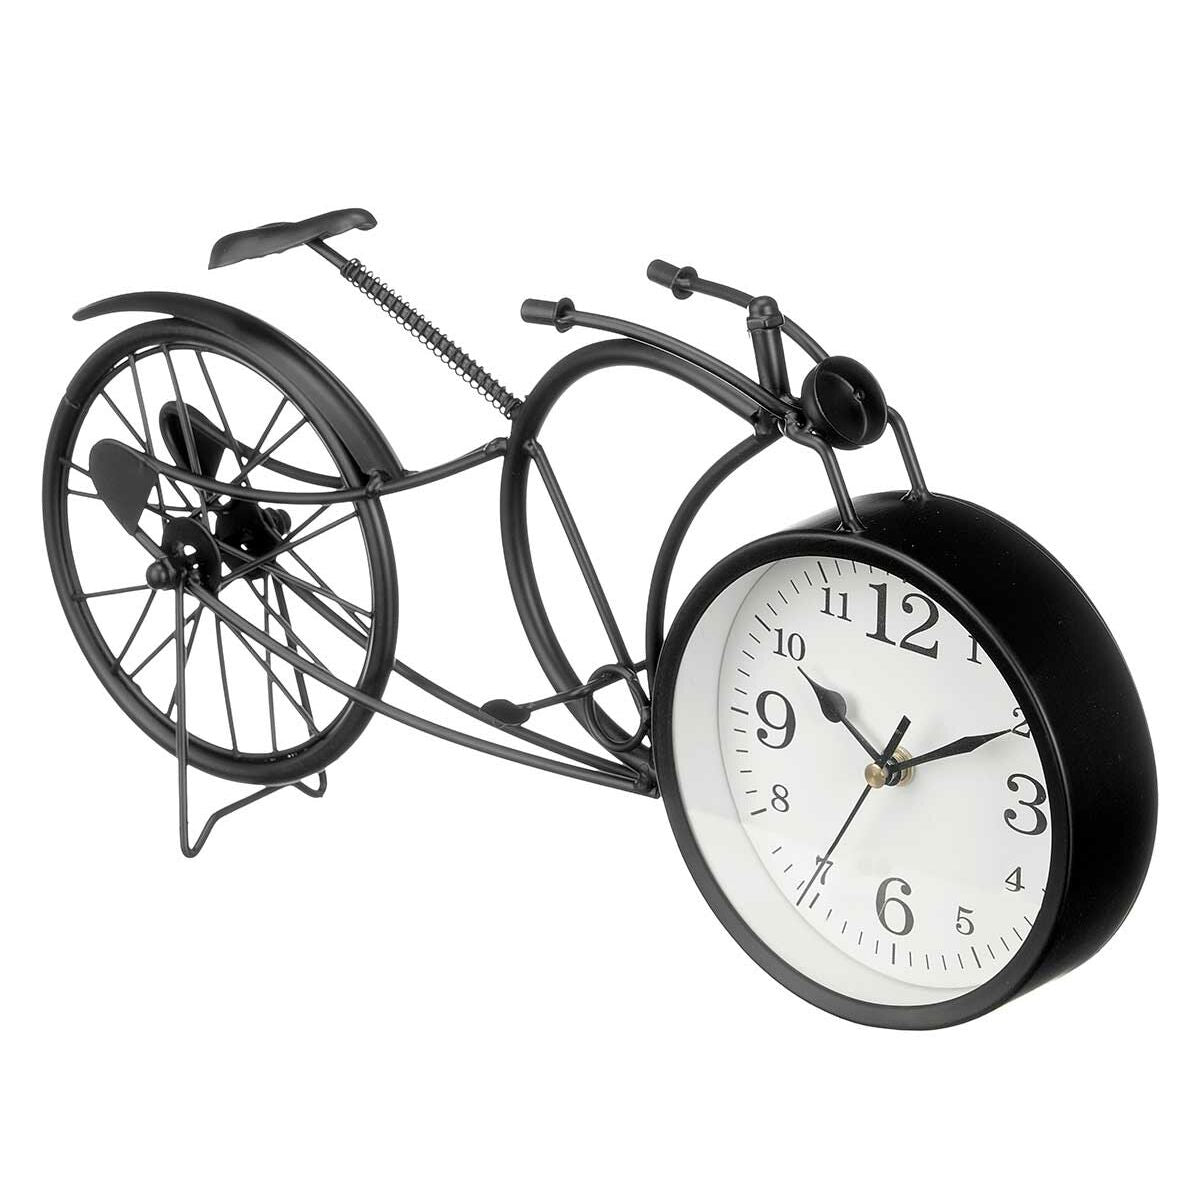 Orologio da Tavolo Bicicletta Nero Metallo 40 x 19,5 x 7 cm (4 Unità)